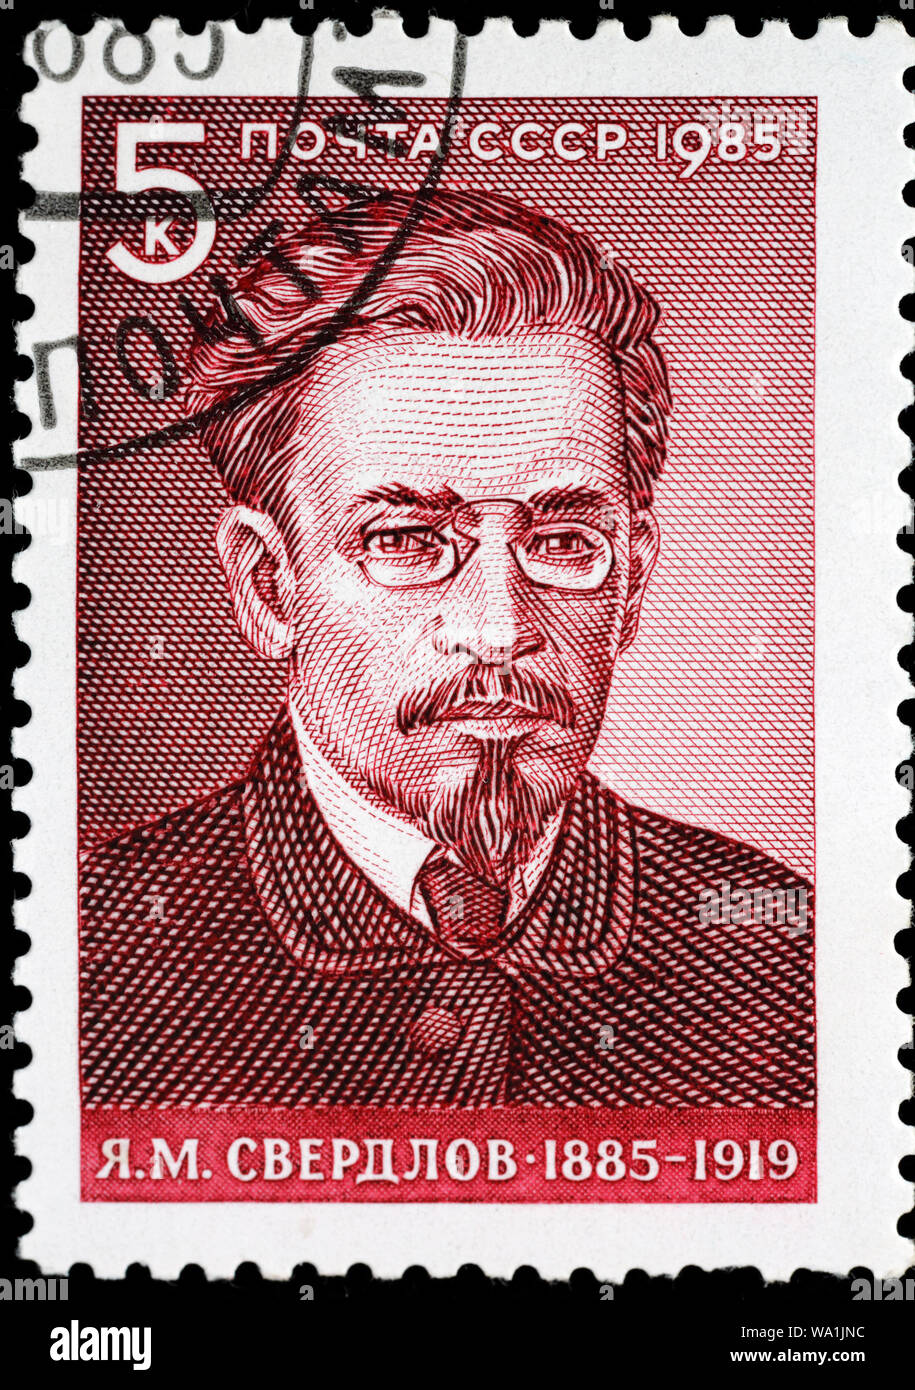 Yakov Sverdlov (1885-1919), chef du Parti bolchevik et homme d'État soviétique, timbre-poste, Russie, URSS, 1985 Banque D'Images